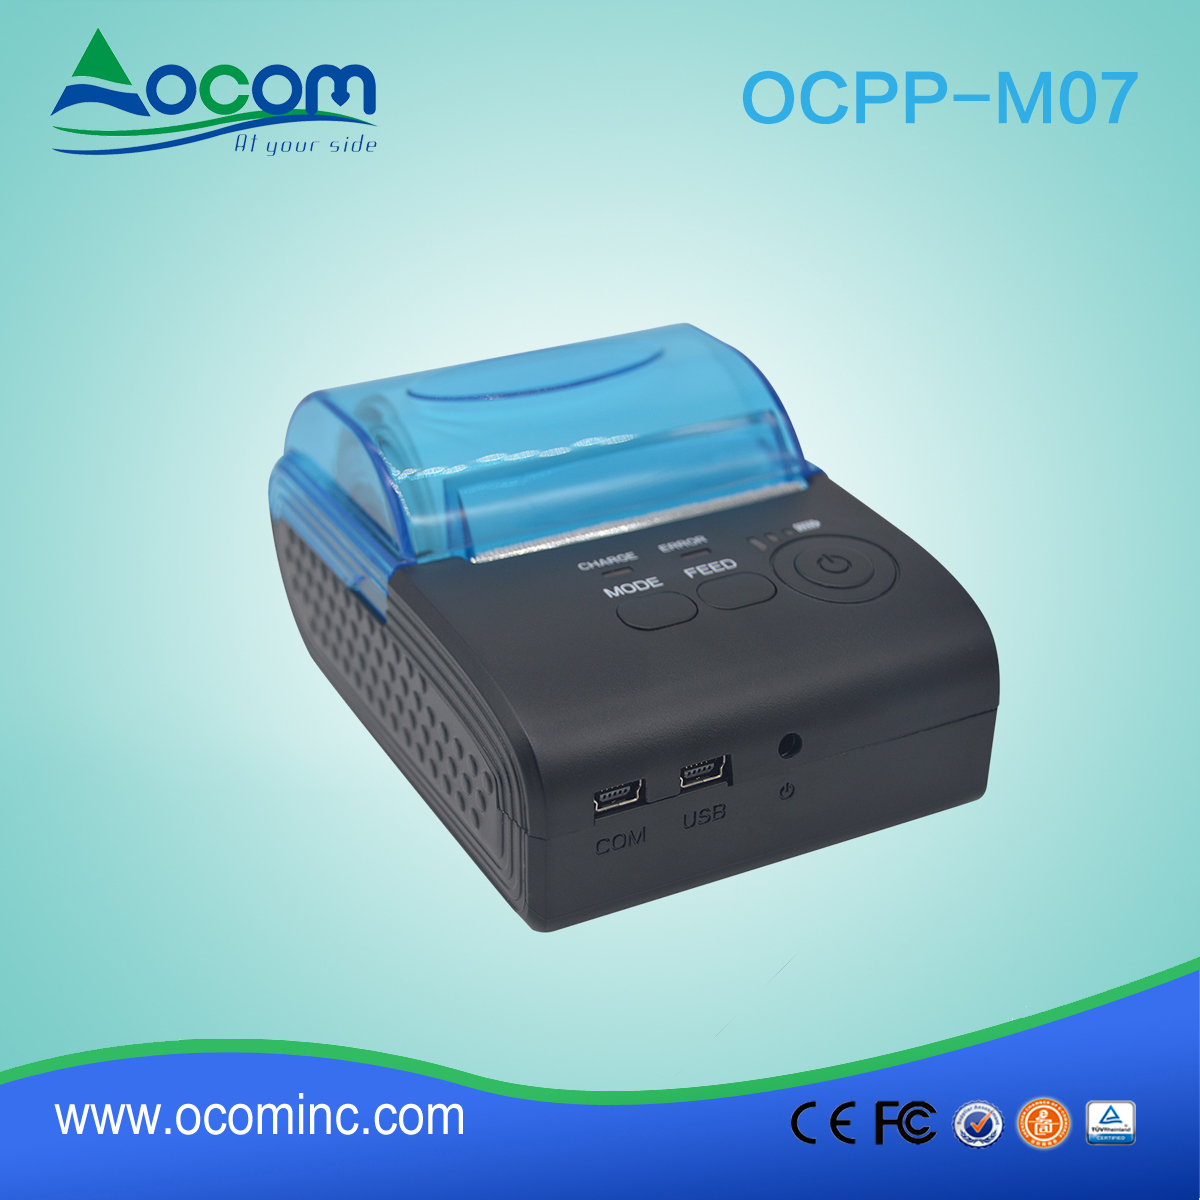 Fabryka OCPP-M07 mini przenośne drukarki dla mobilnych android ios